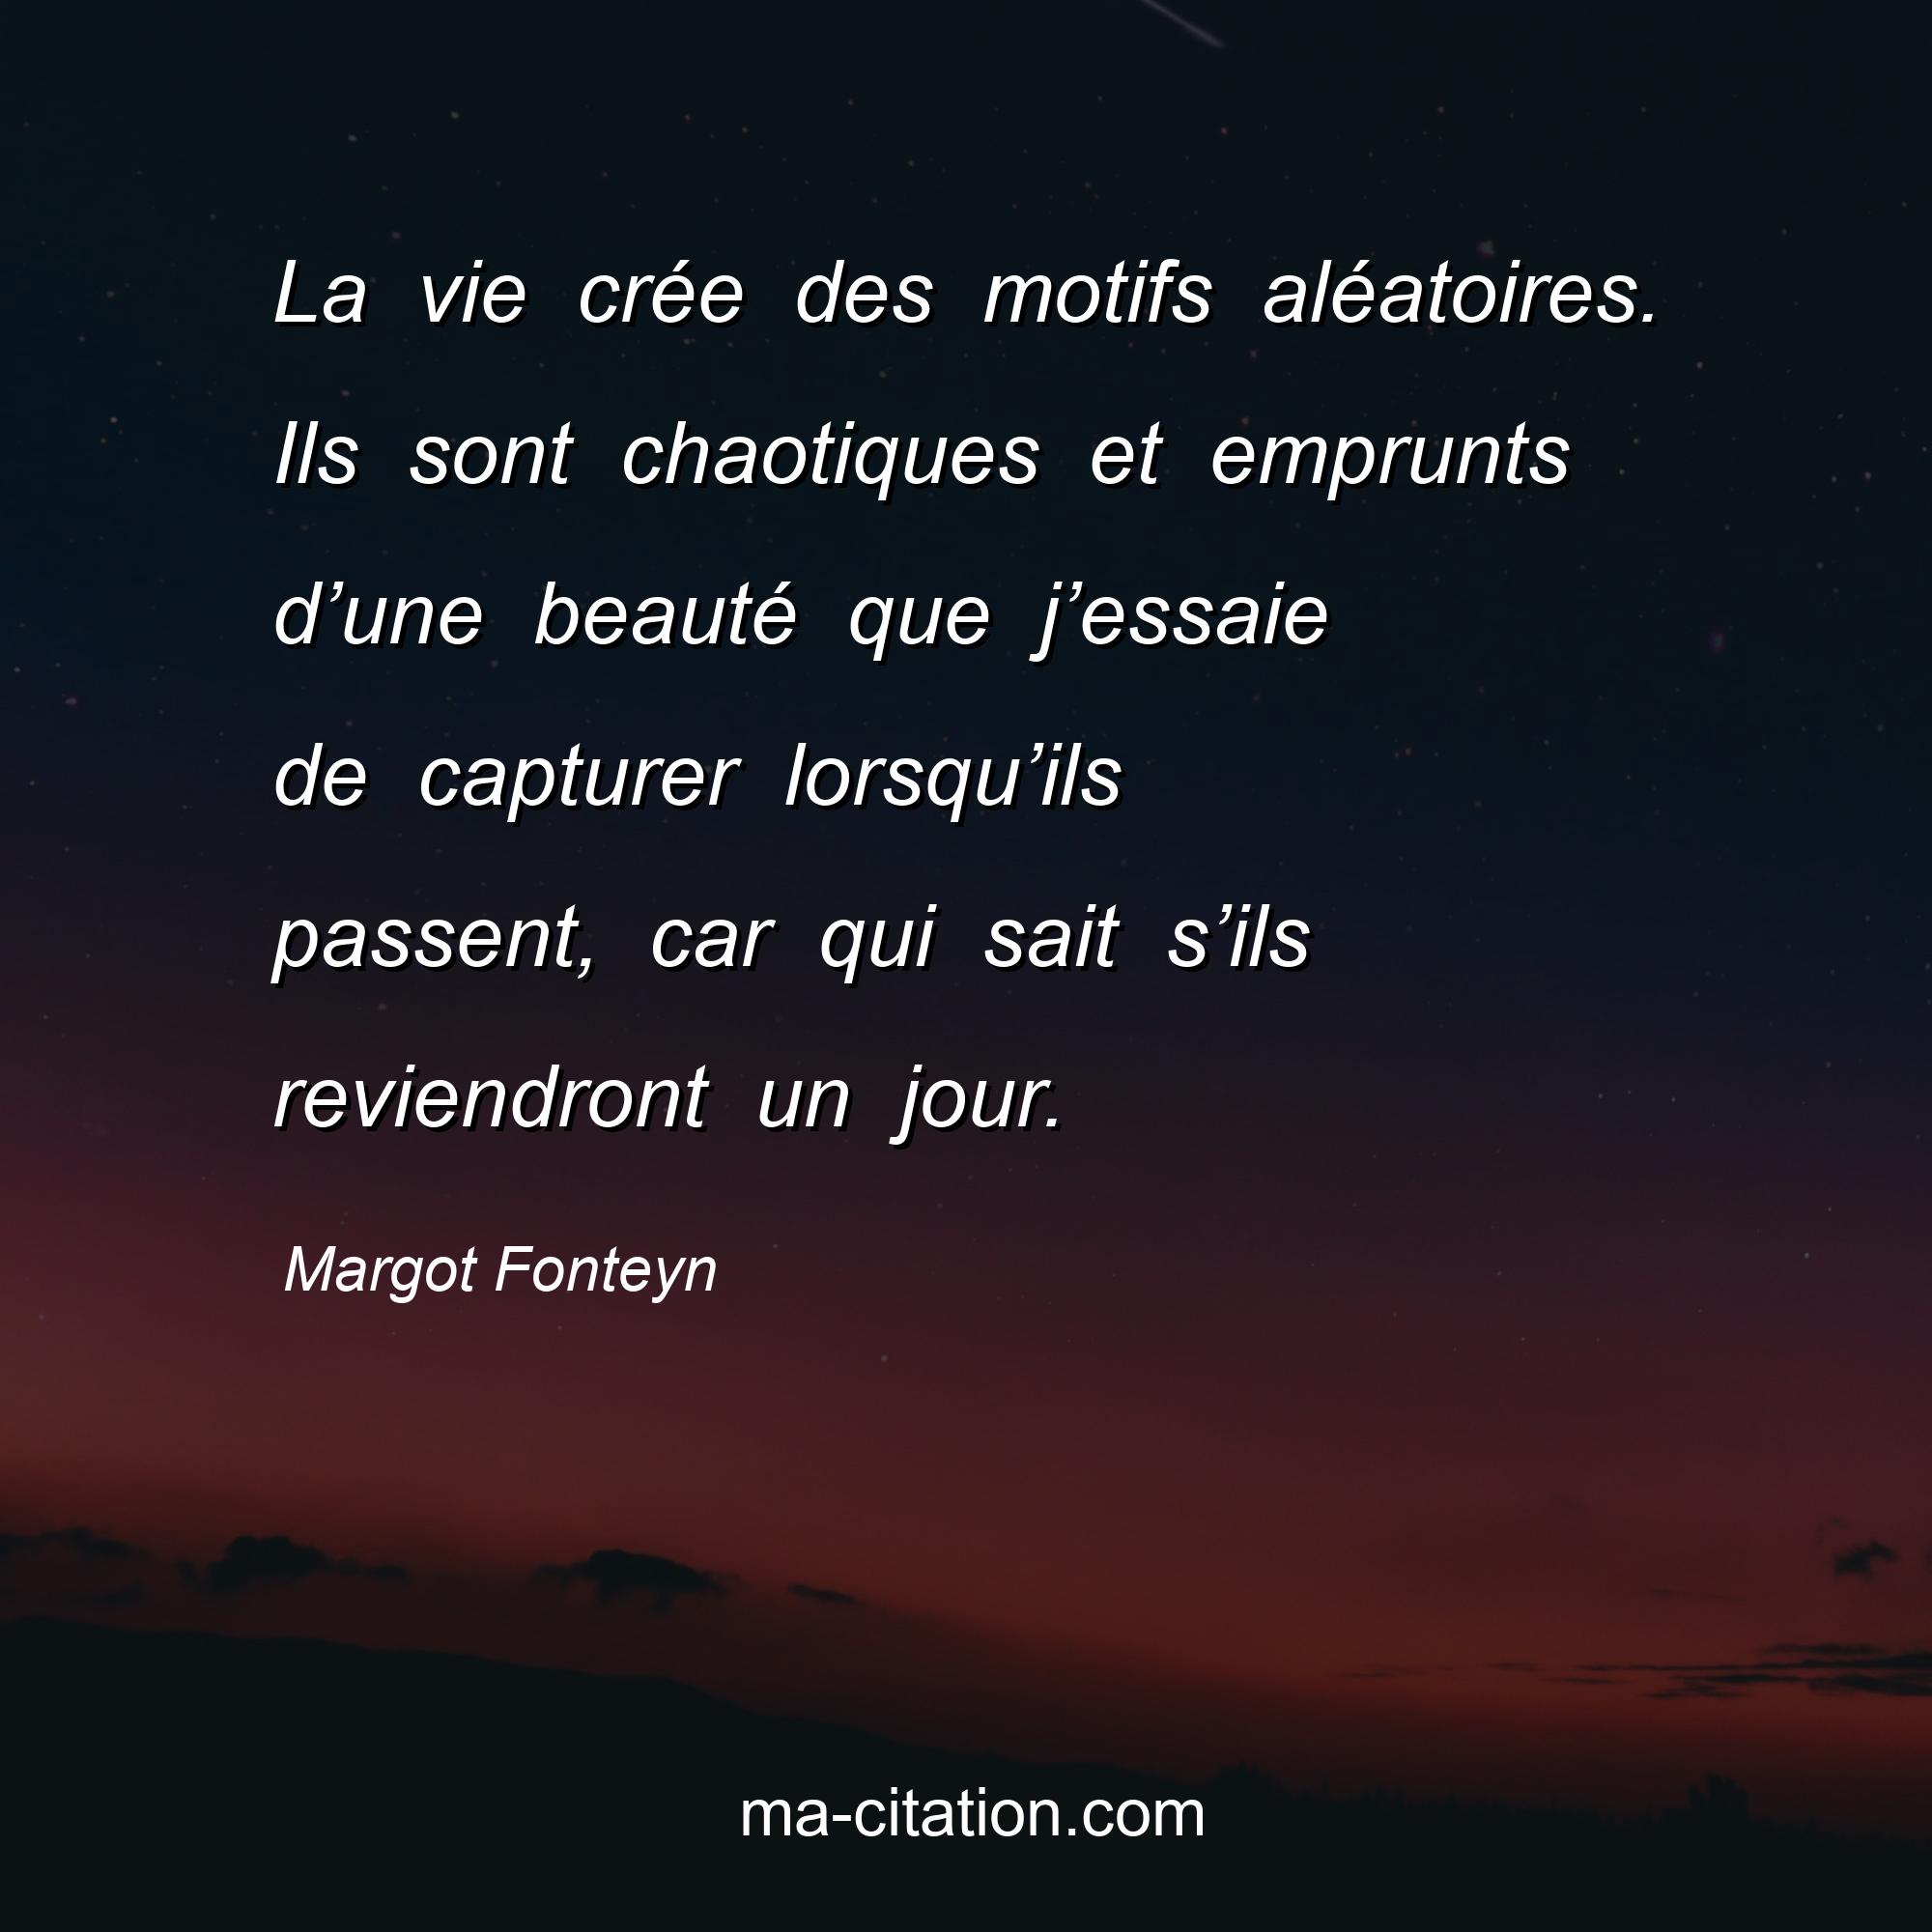 Margot Fonteyn : La vie crée des motifs aléatoires. Ils sont chaotiques et emprunts d’une beauté que j’essaie de capturer lorsqu’ils passent, car qui sait s’ils reviendront un jour.